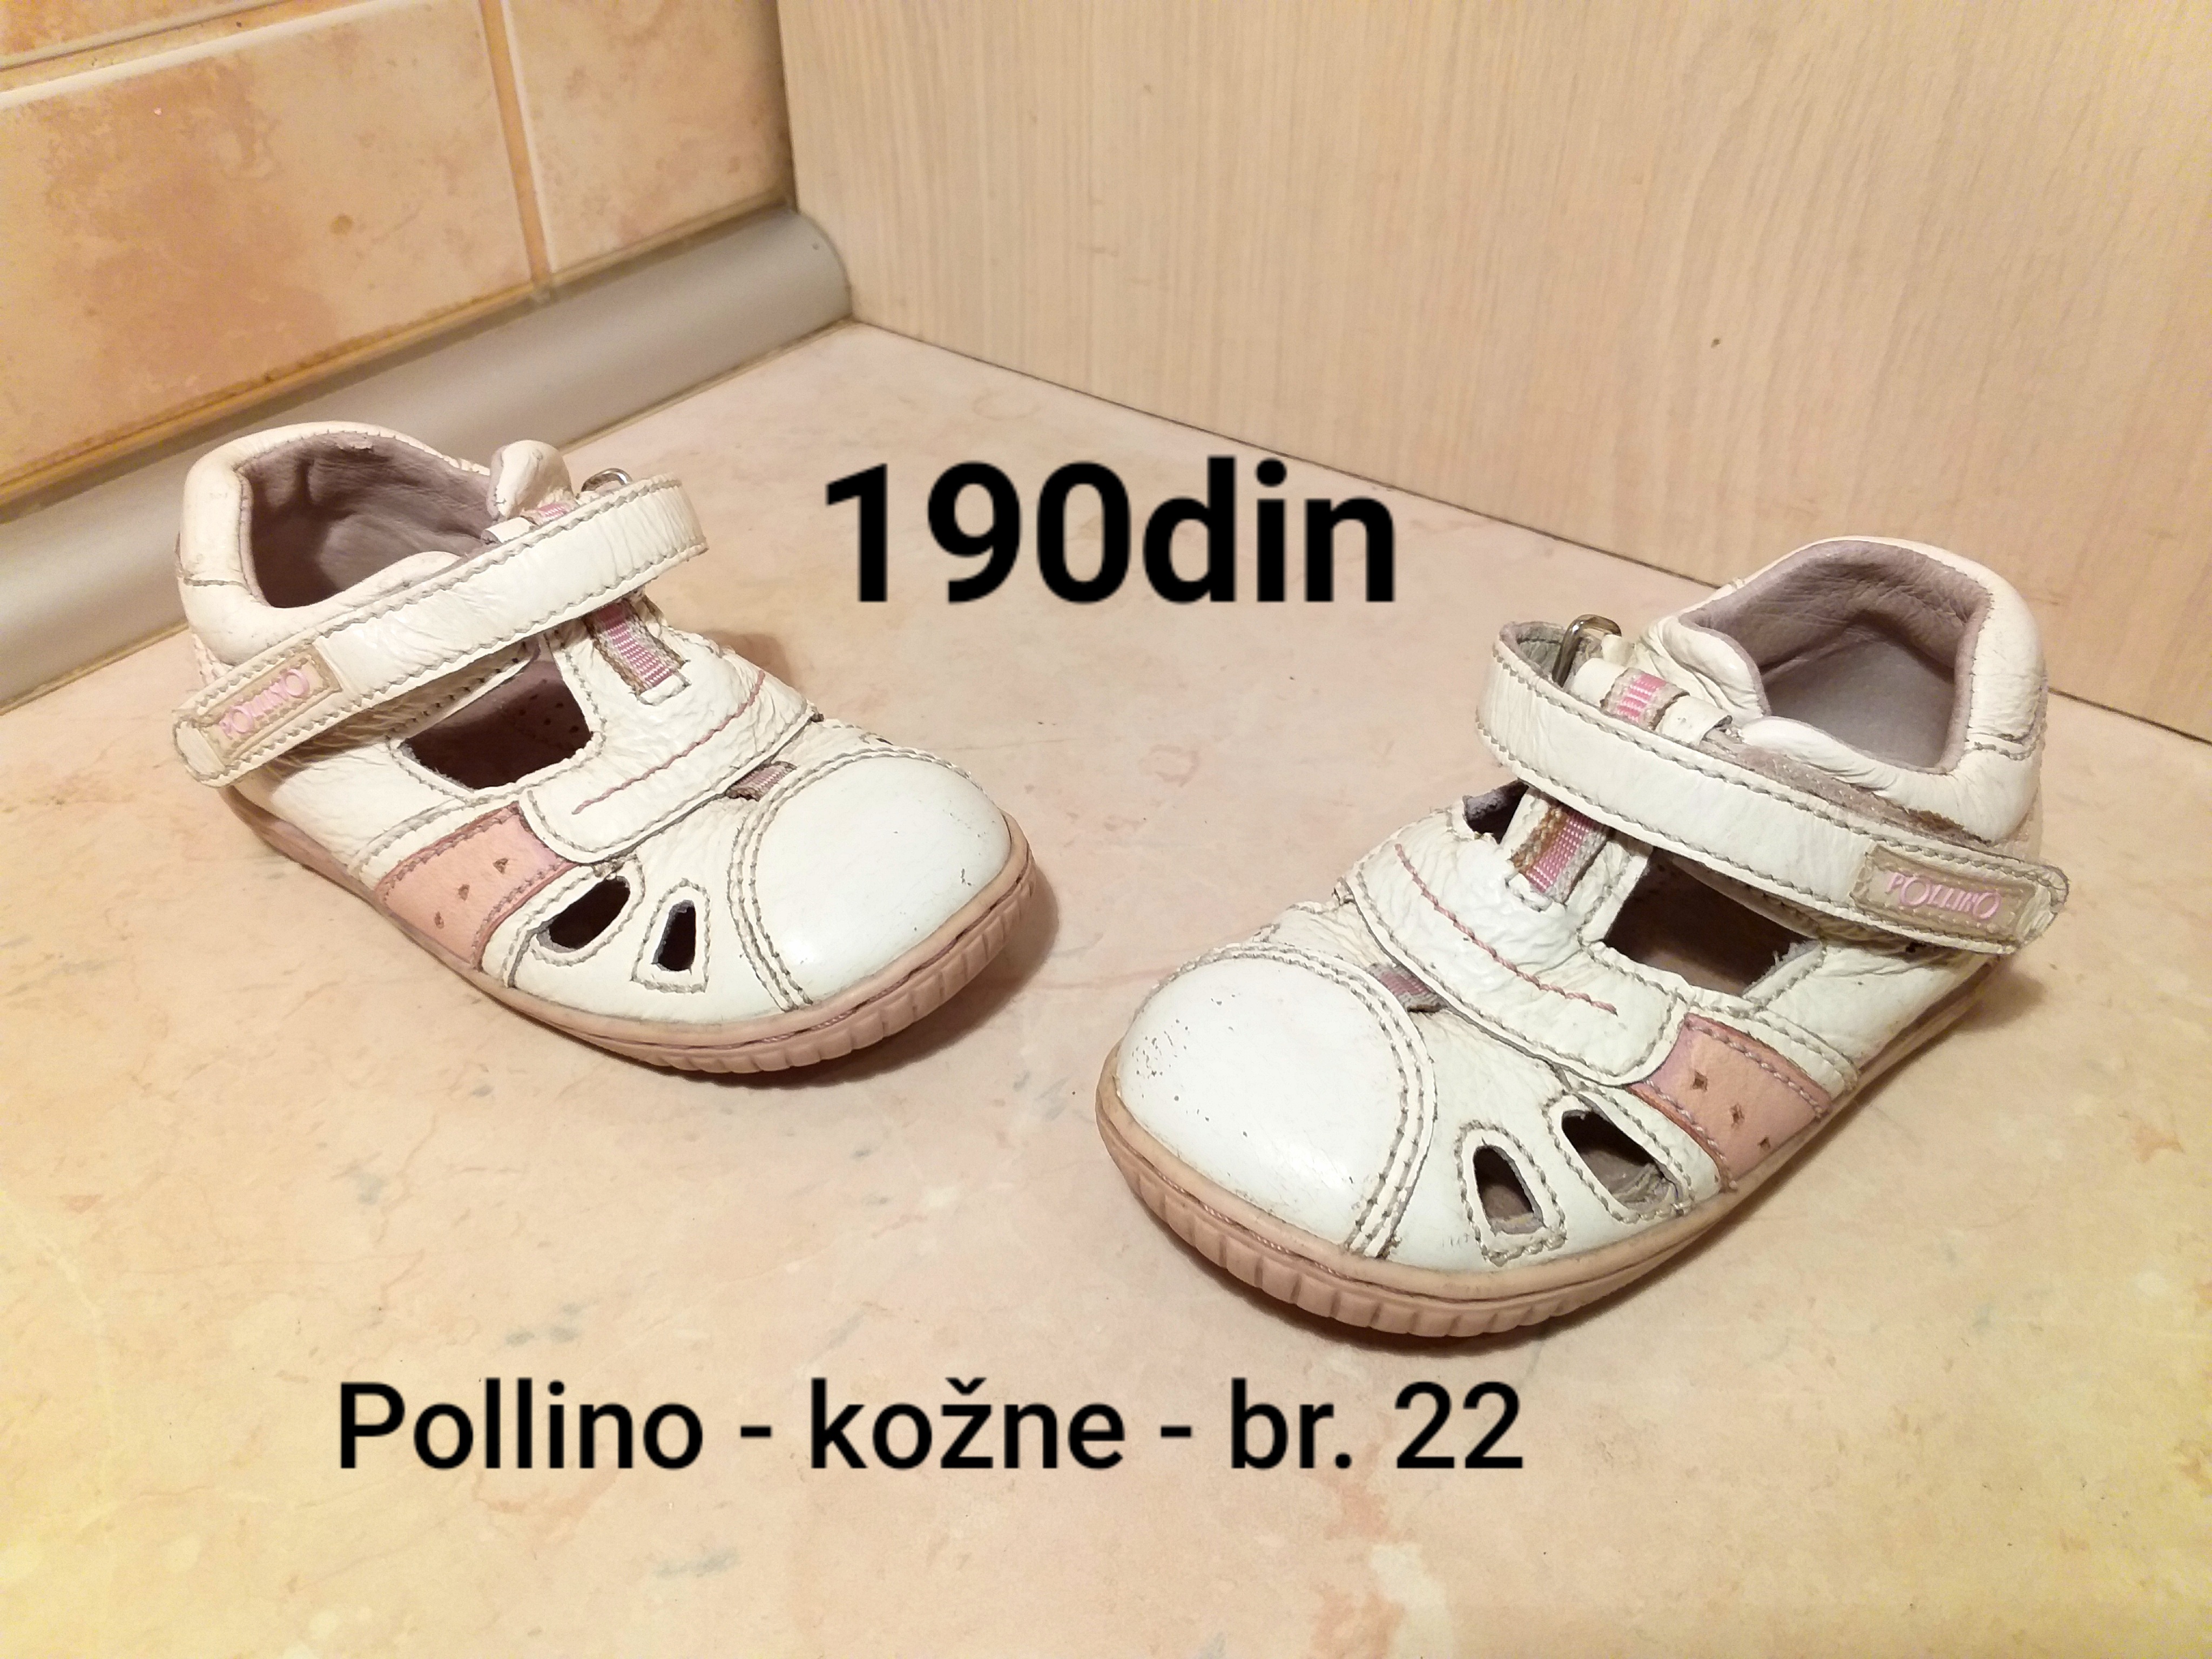 Polino kožne dečije sandale belo roze br. 22